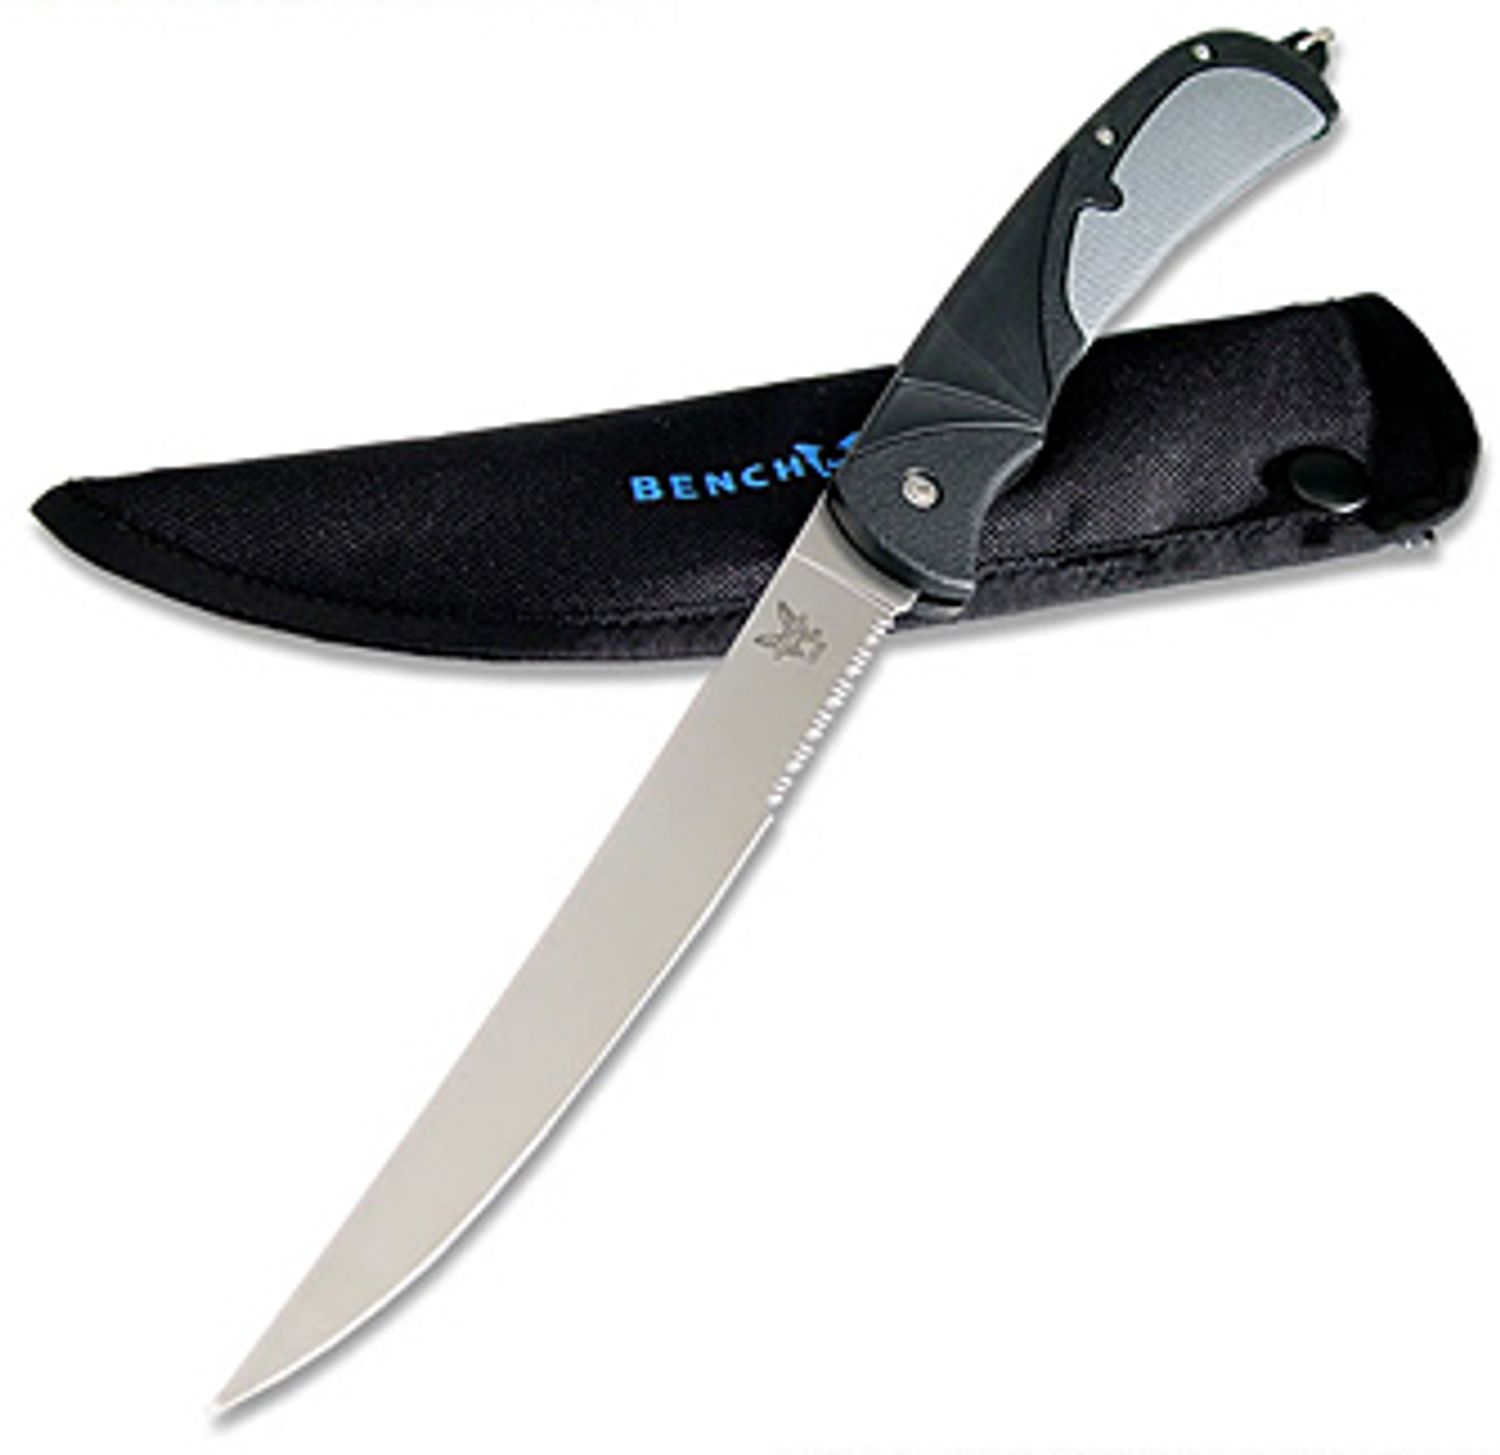 Benchmade Steigerwalt Salmon River Fillet w/ 7.09 AUS8 Steel Blade -  KnifeCenter - BM10110S - Discontinued